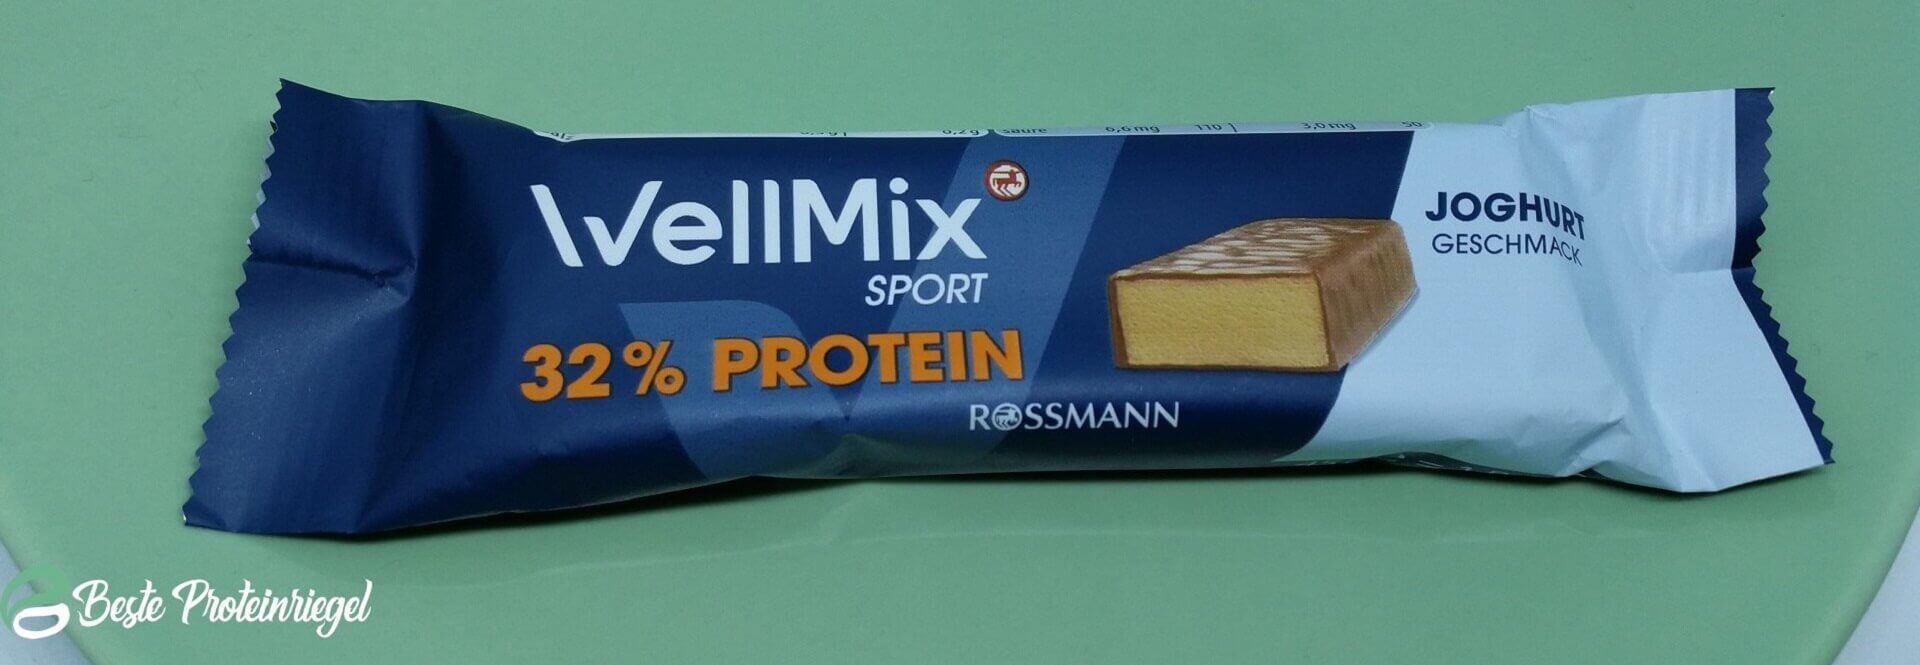 WellMix Sport 32% Protein Riegel Testbericht